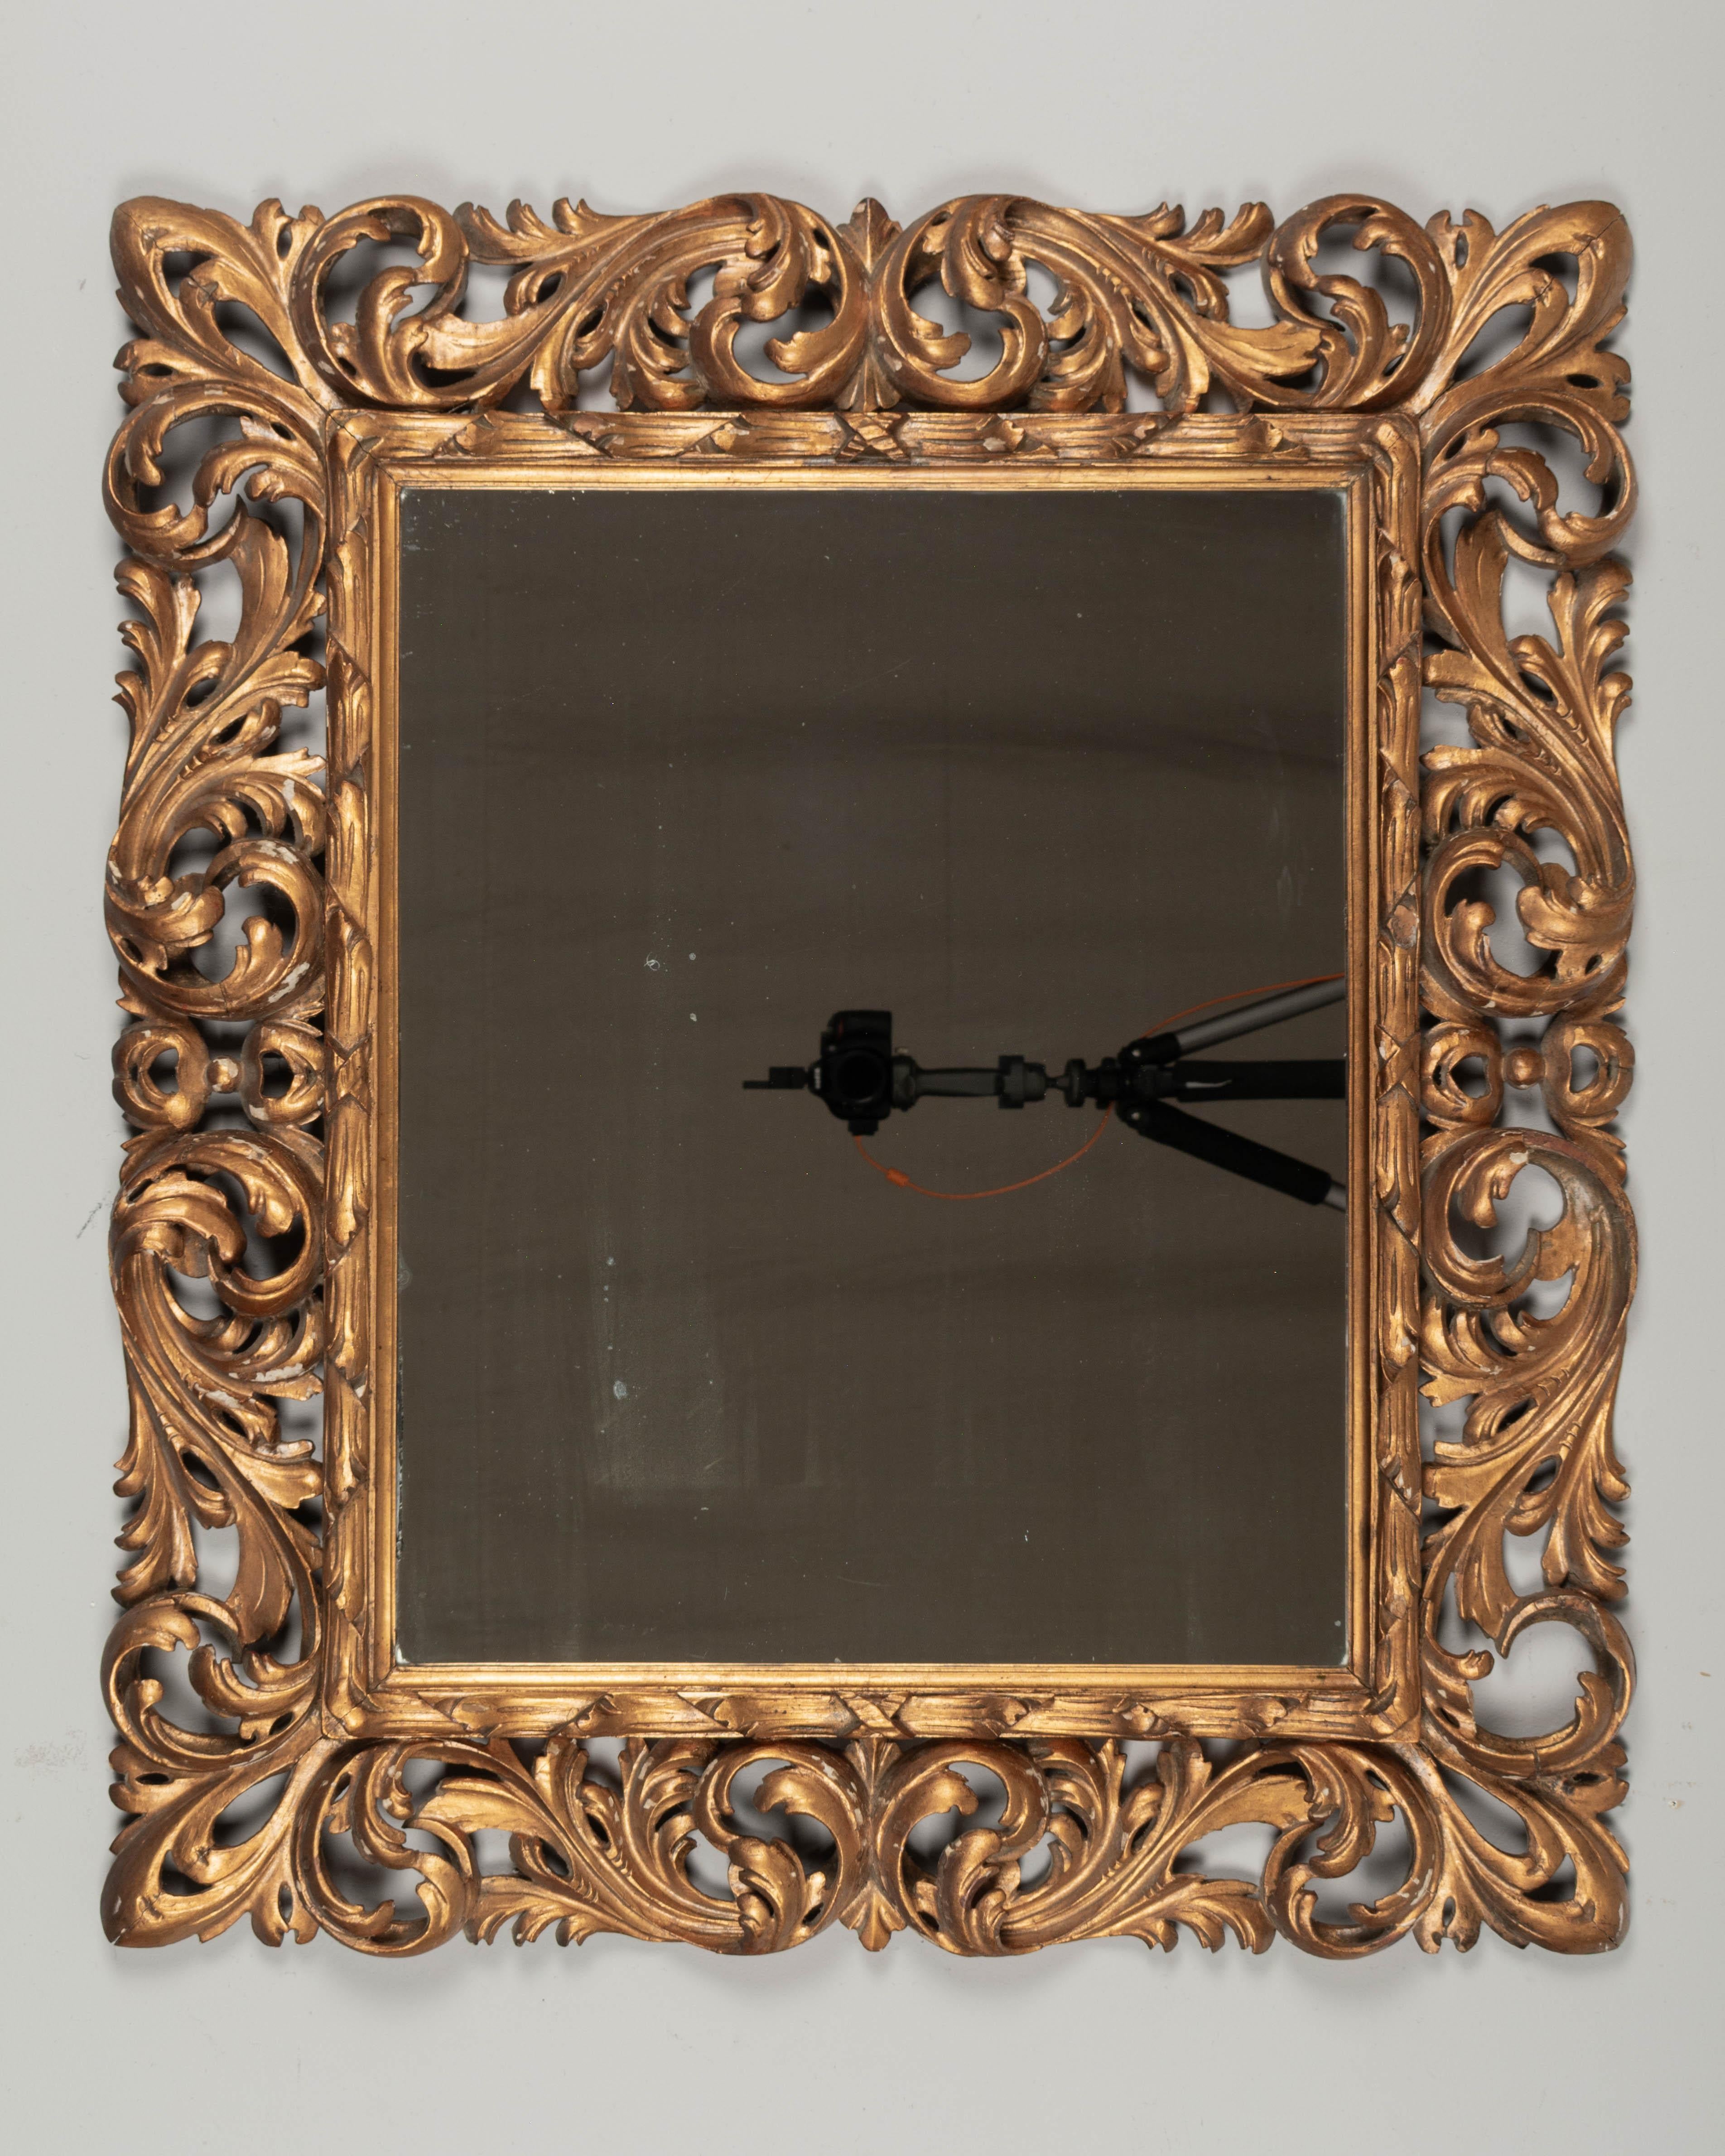 Ein italienischer Barockspiegel aus vergoldetem Holz mit geschnitzten Akanthusblättern. Warme Vergoldung mit vielen Verlusten in der Vergoldung und einigen kleineren Verlusten in der Schnitzerei. Original-Spiegel. Zum horizontalen Aufhängen